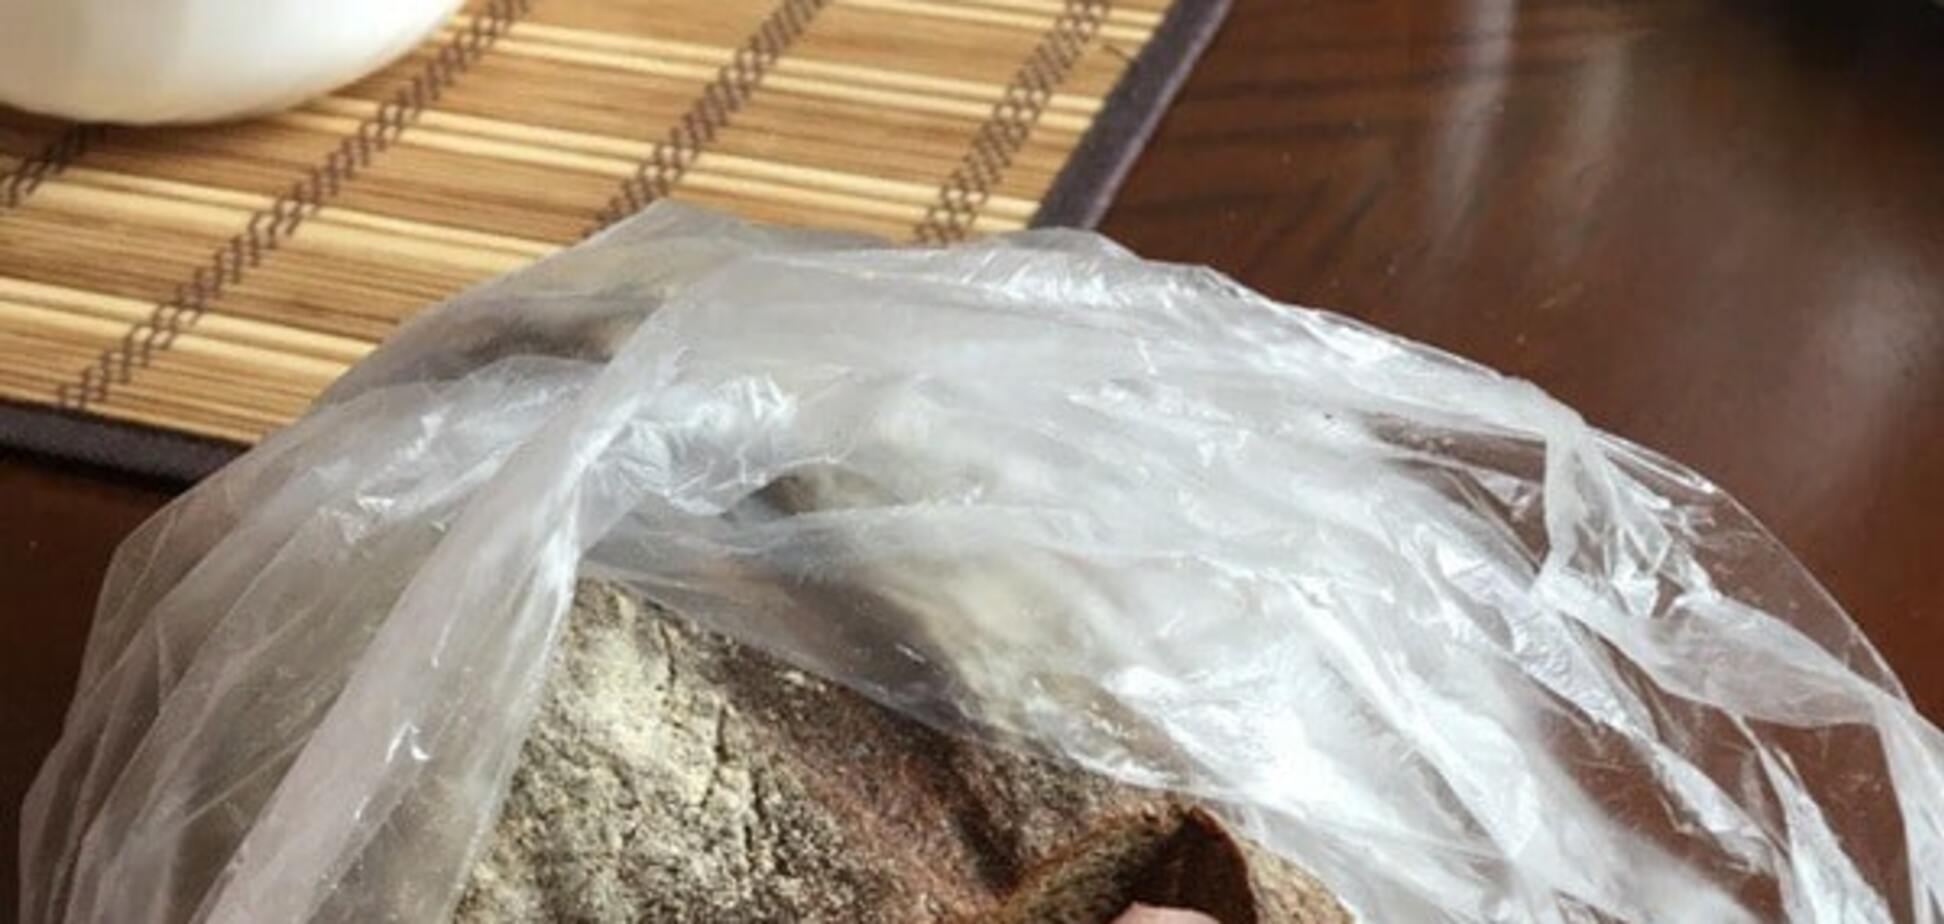 Хлеб по-крымски: в Севастополе в буханке нашли резиновую перчатку